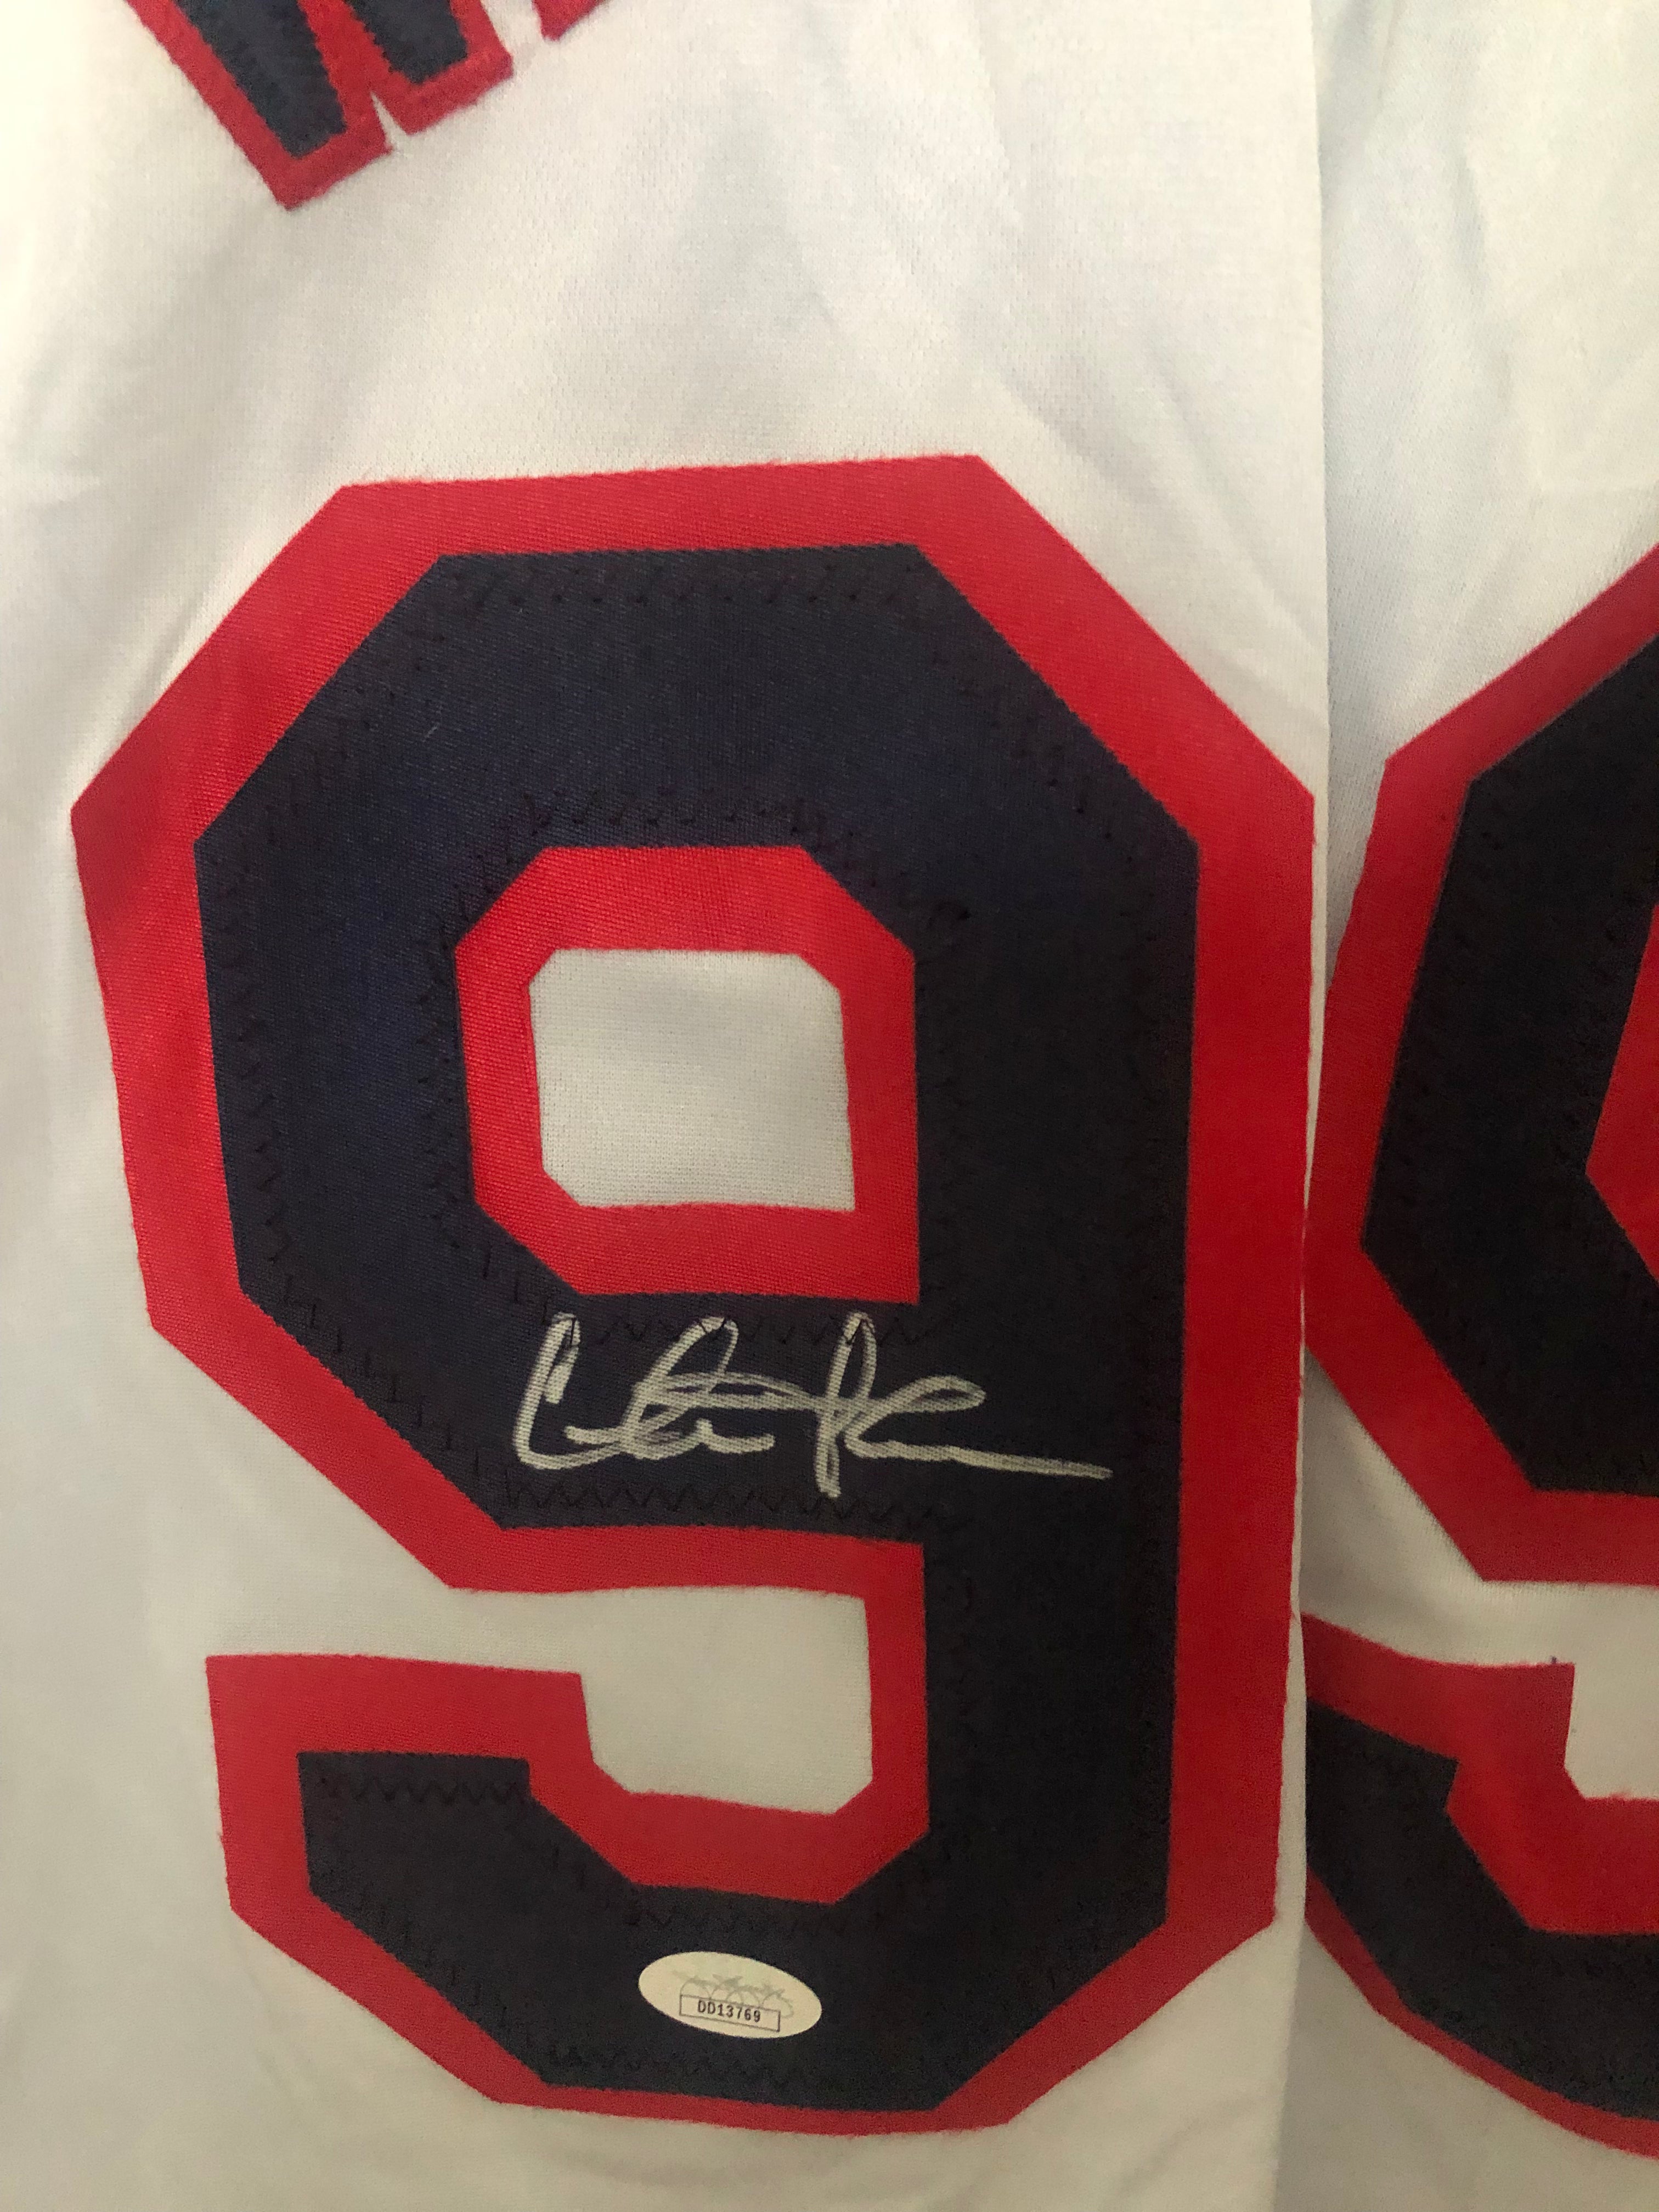 Jon Lester Signed Boston Red Sox Jersey JSA Size XL